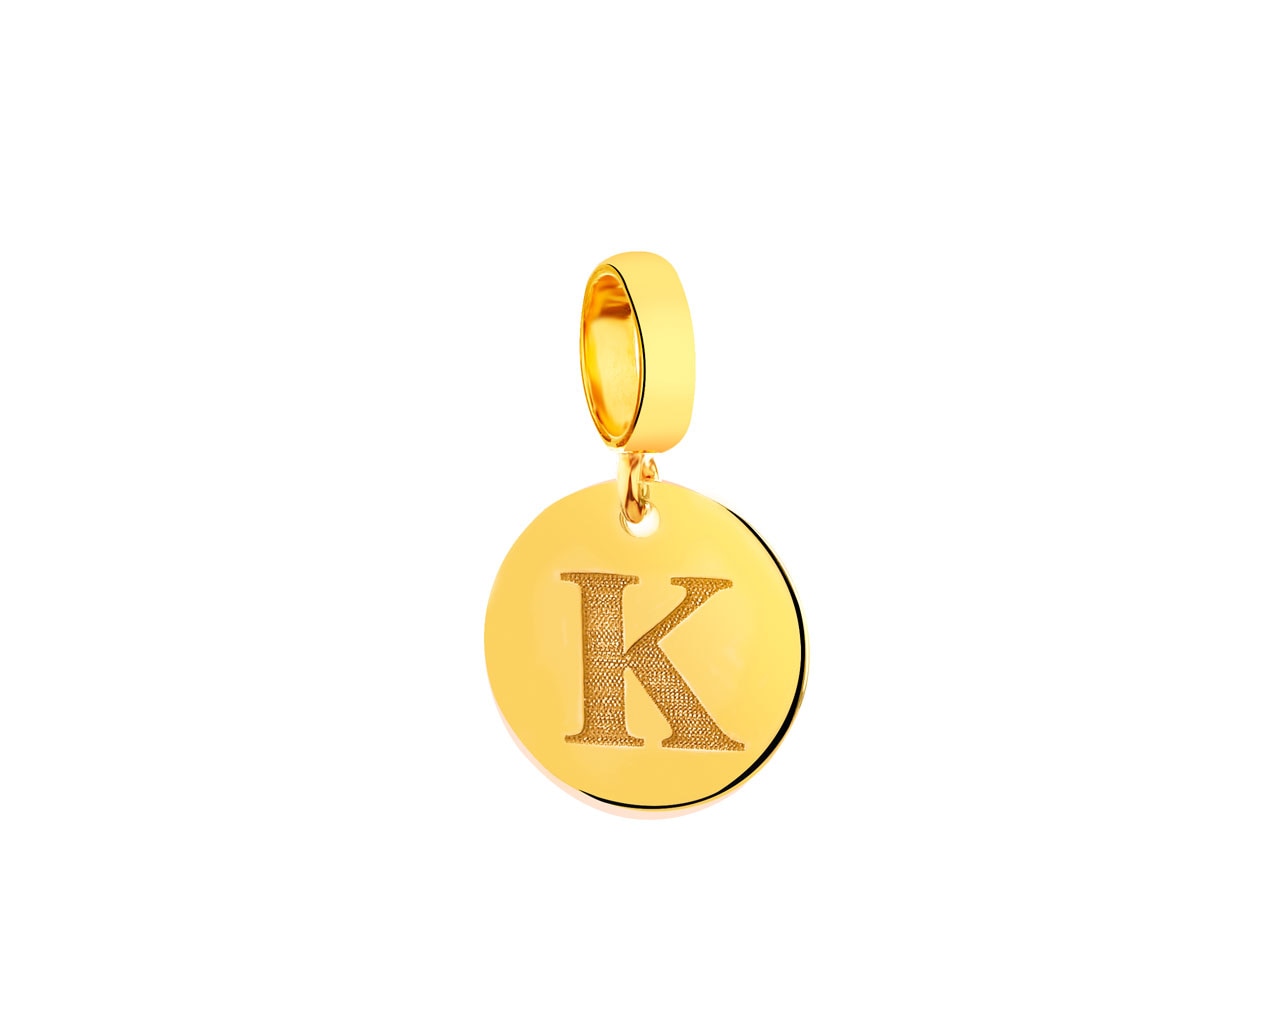 Złota zawieszka beads - litera K